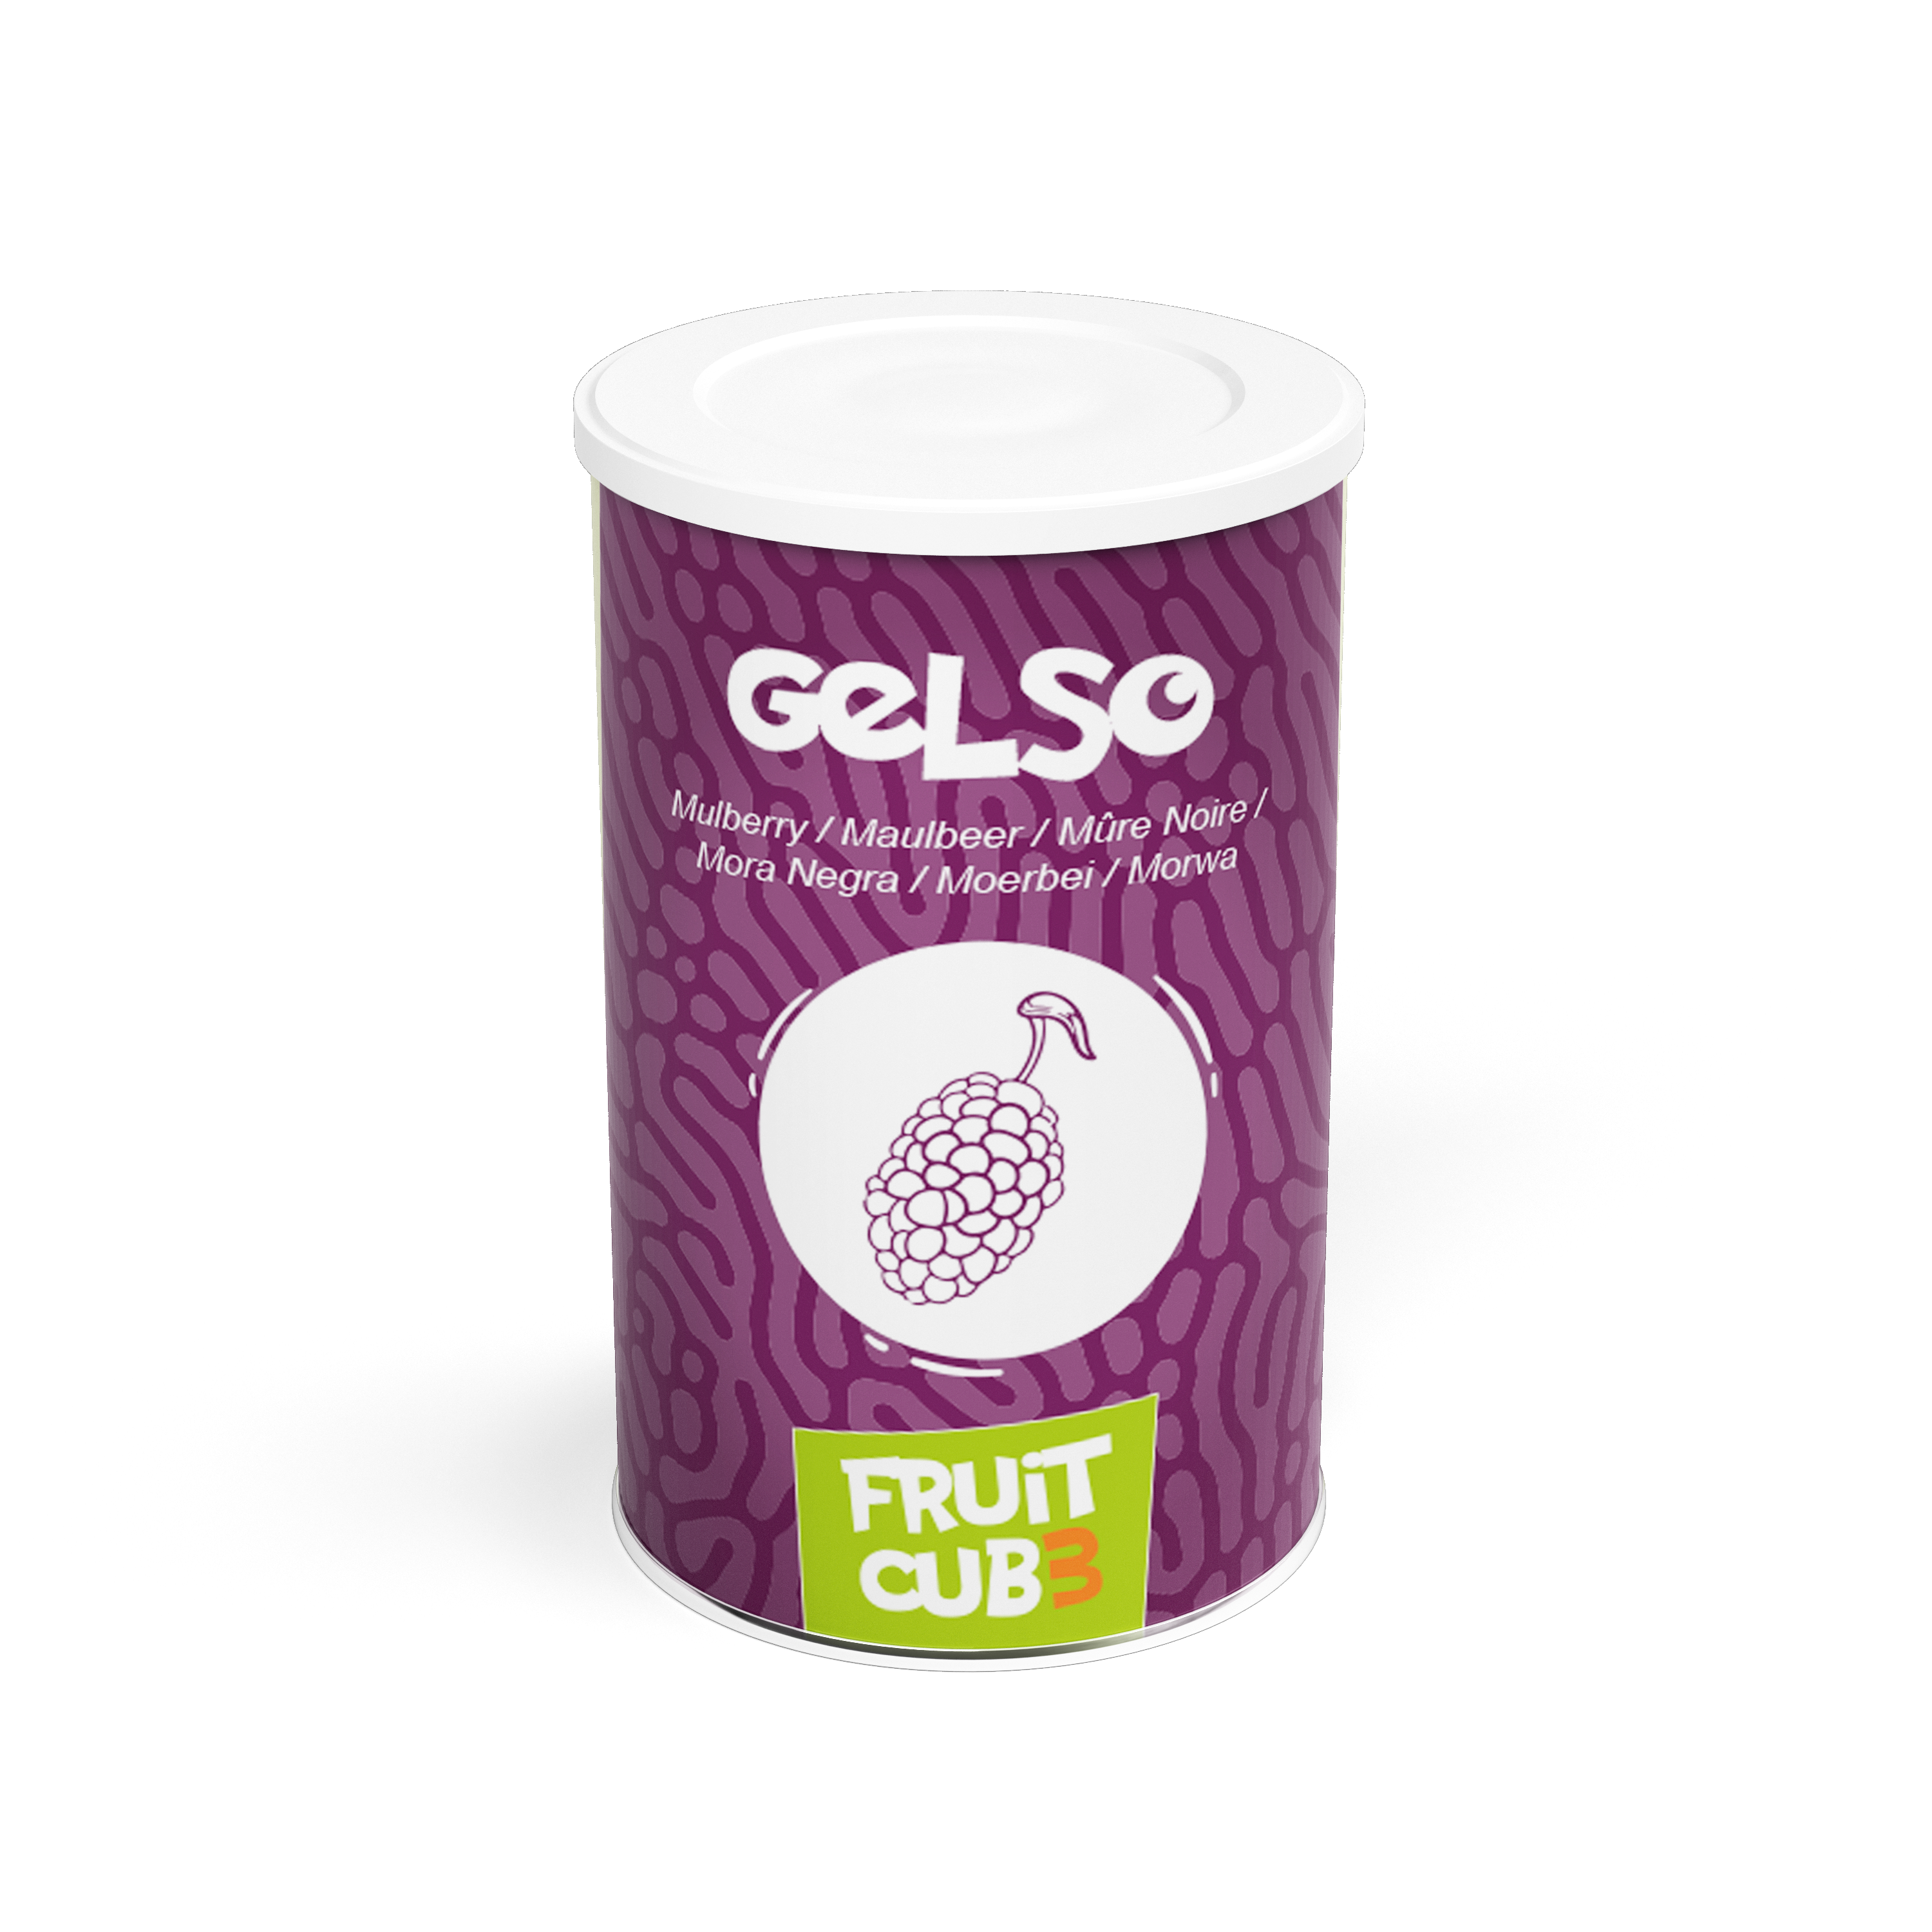 Fruitcub3 Gelso